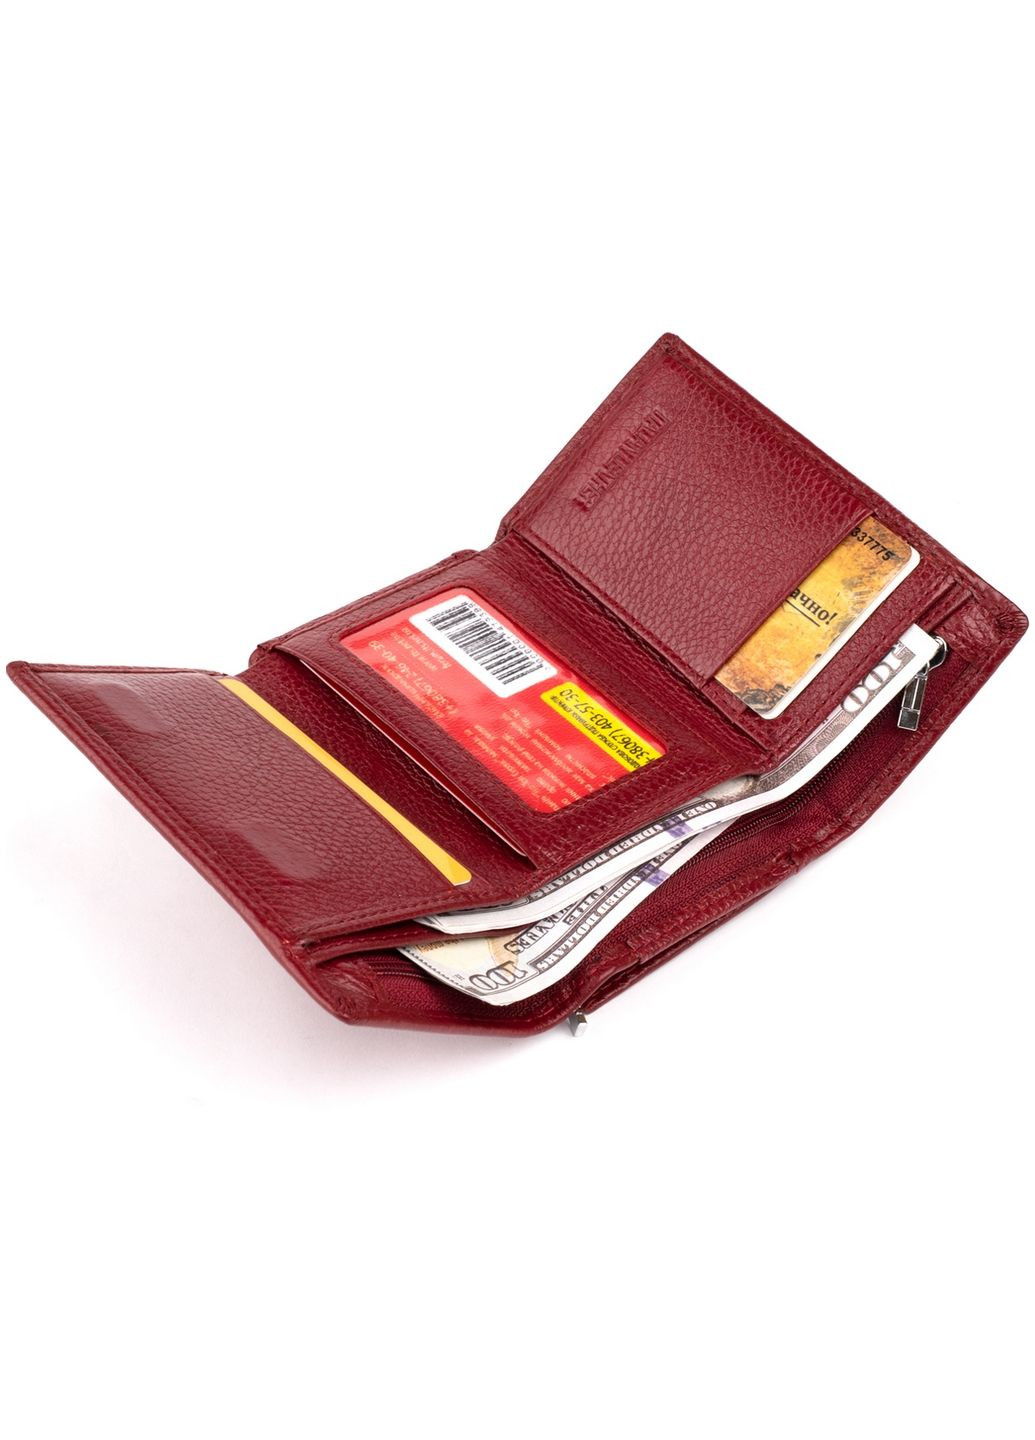 Жіночий шкіряний гаманець st leather (282595641)